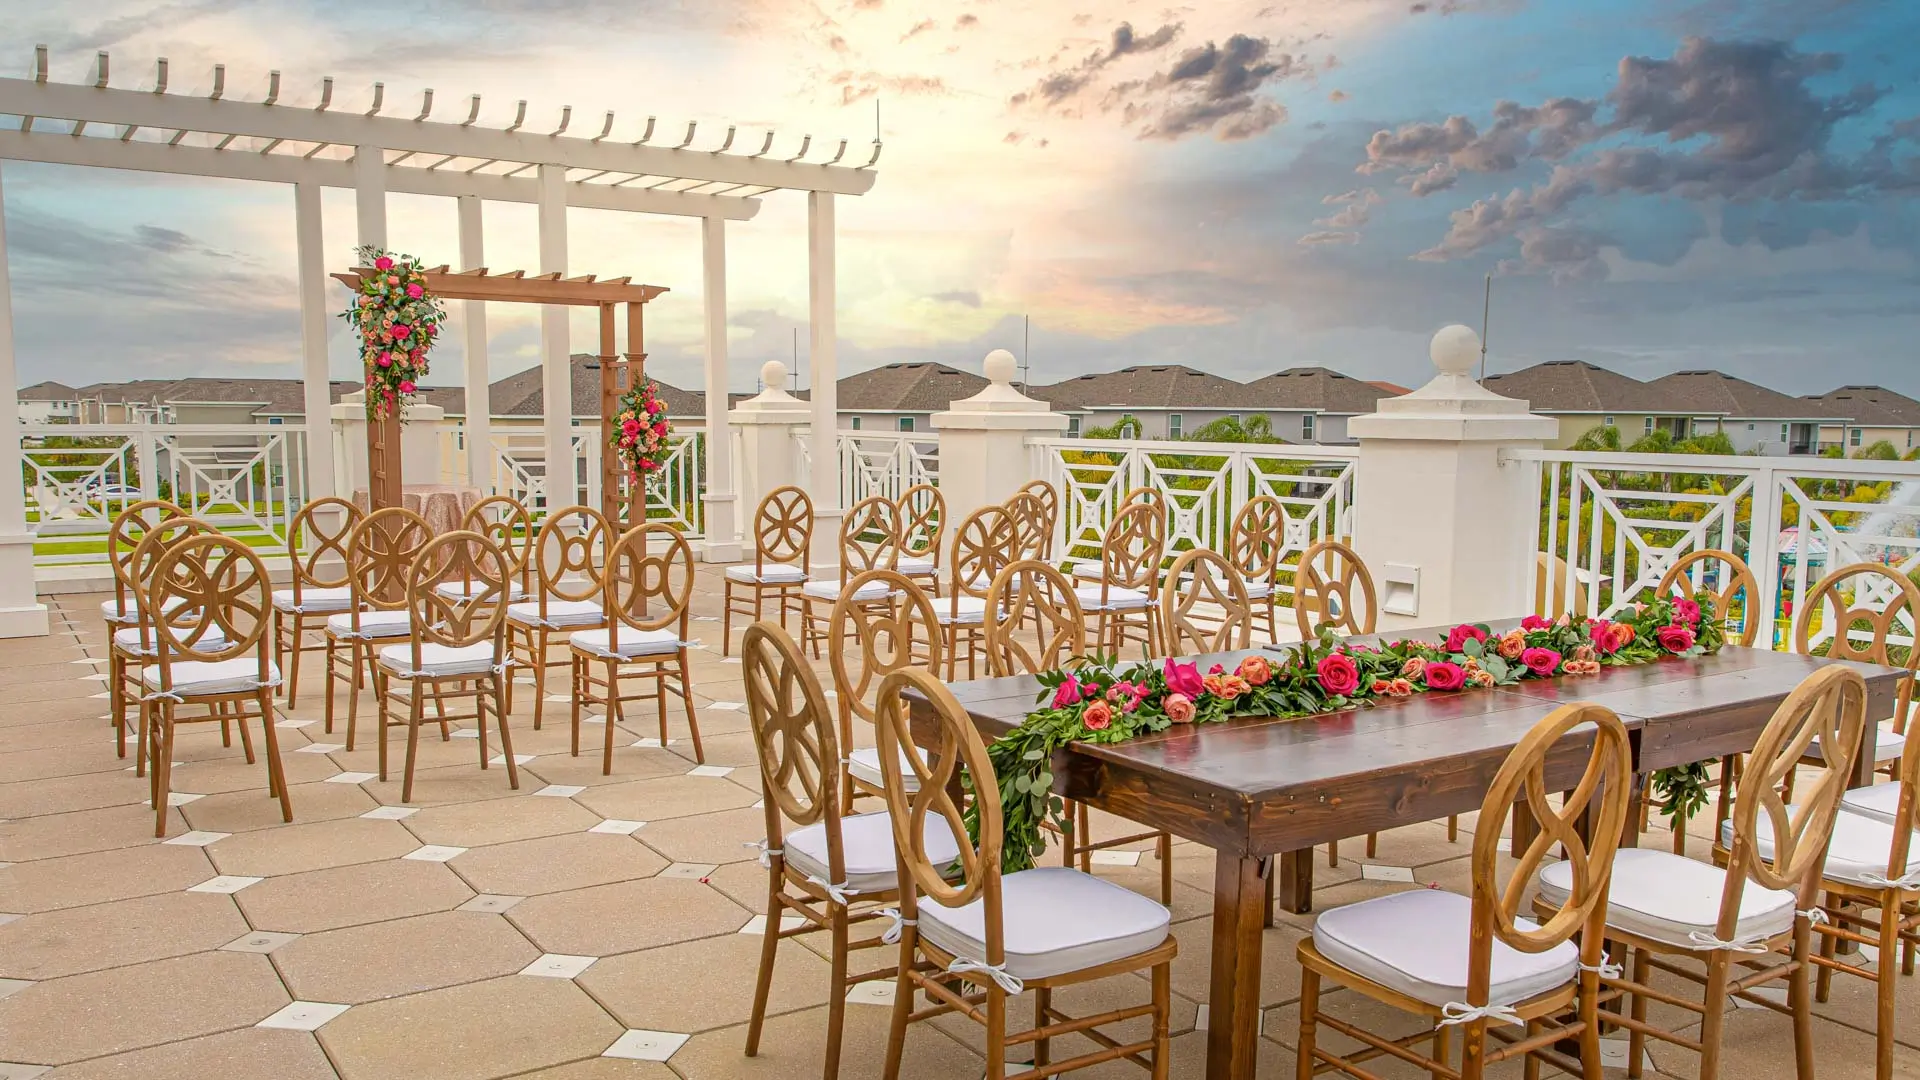 Encoreの屋外クラブハウス テラスは、日没時の結婚式用に装飾されています。